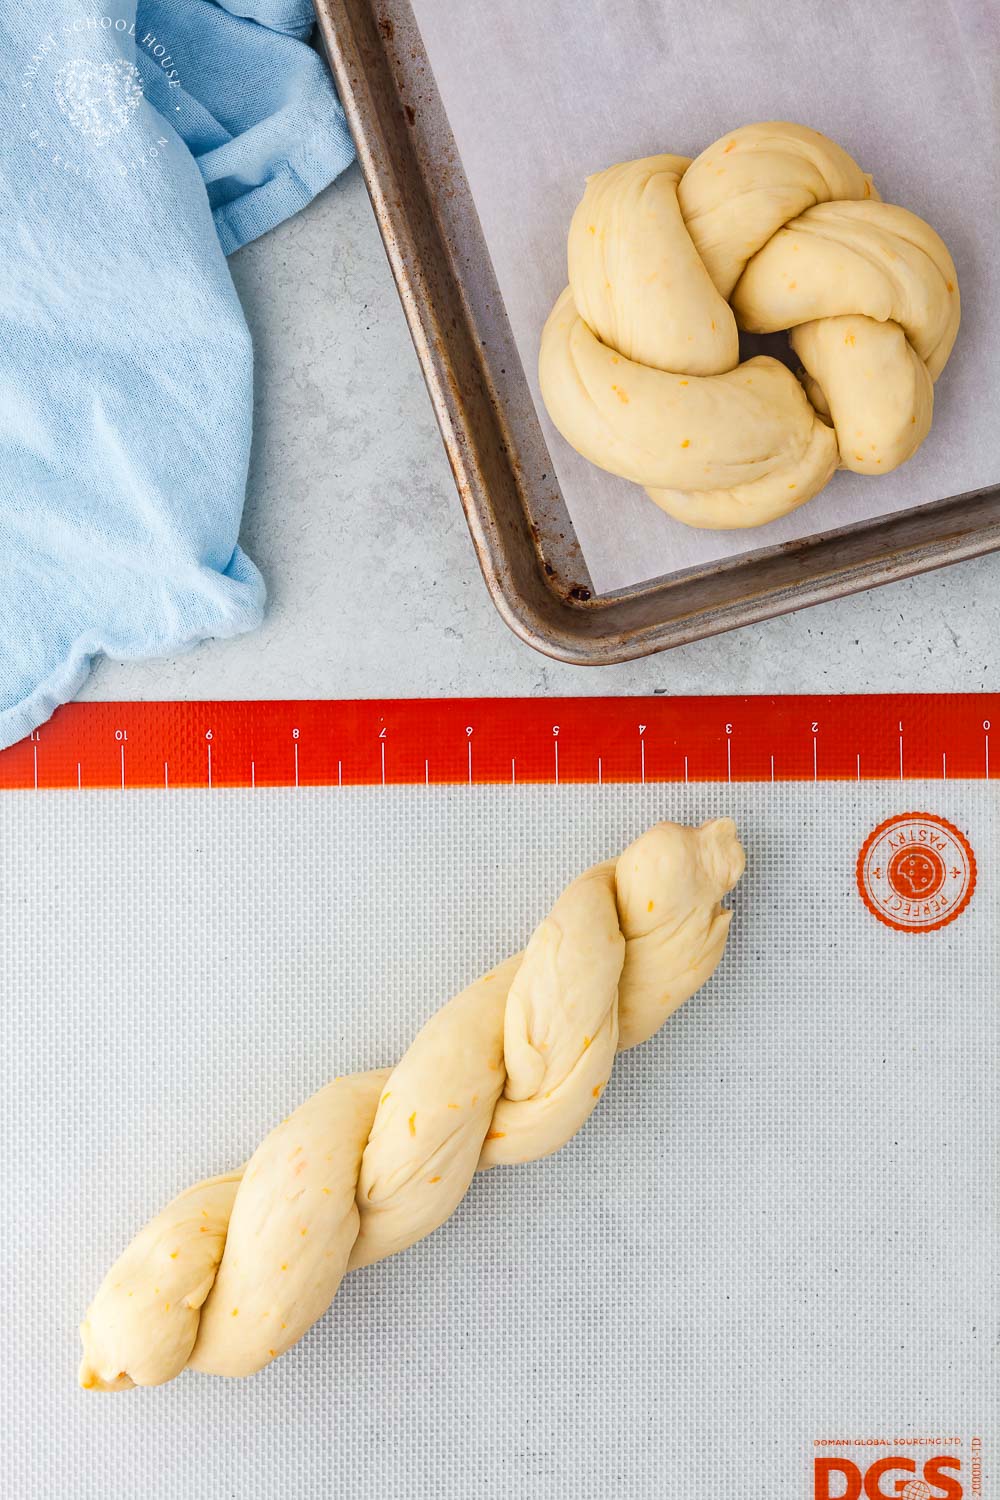 Braided dough